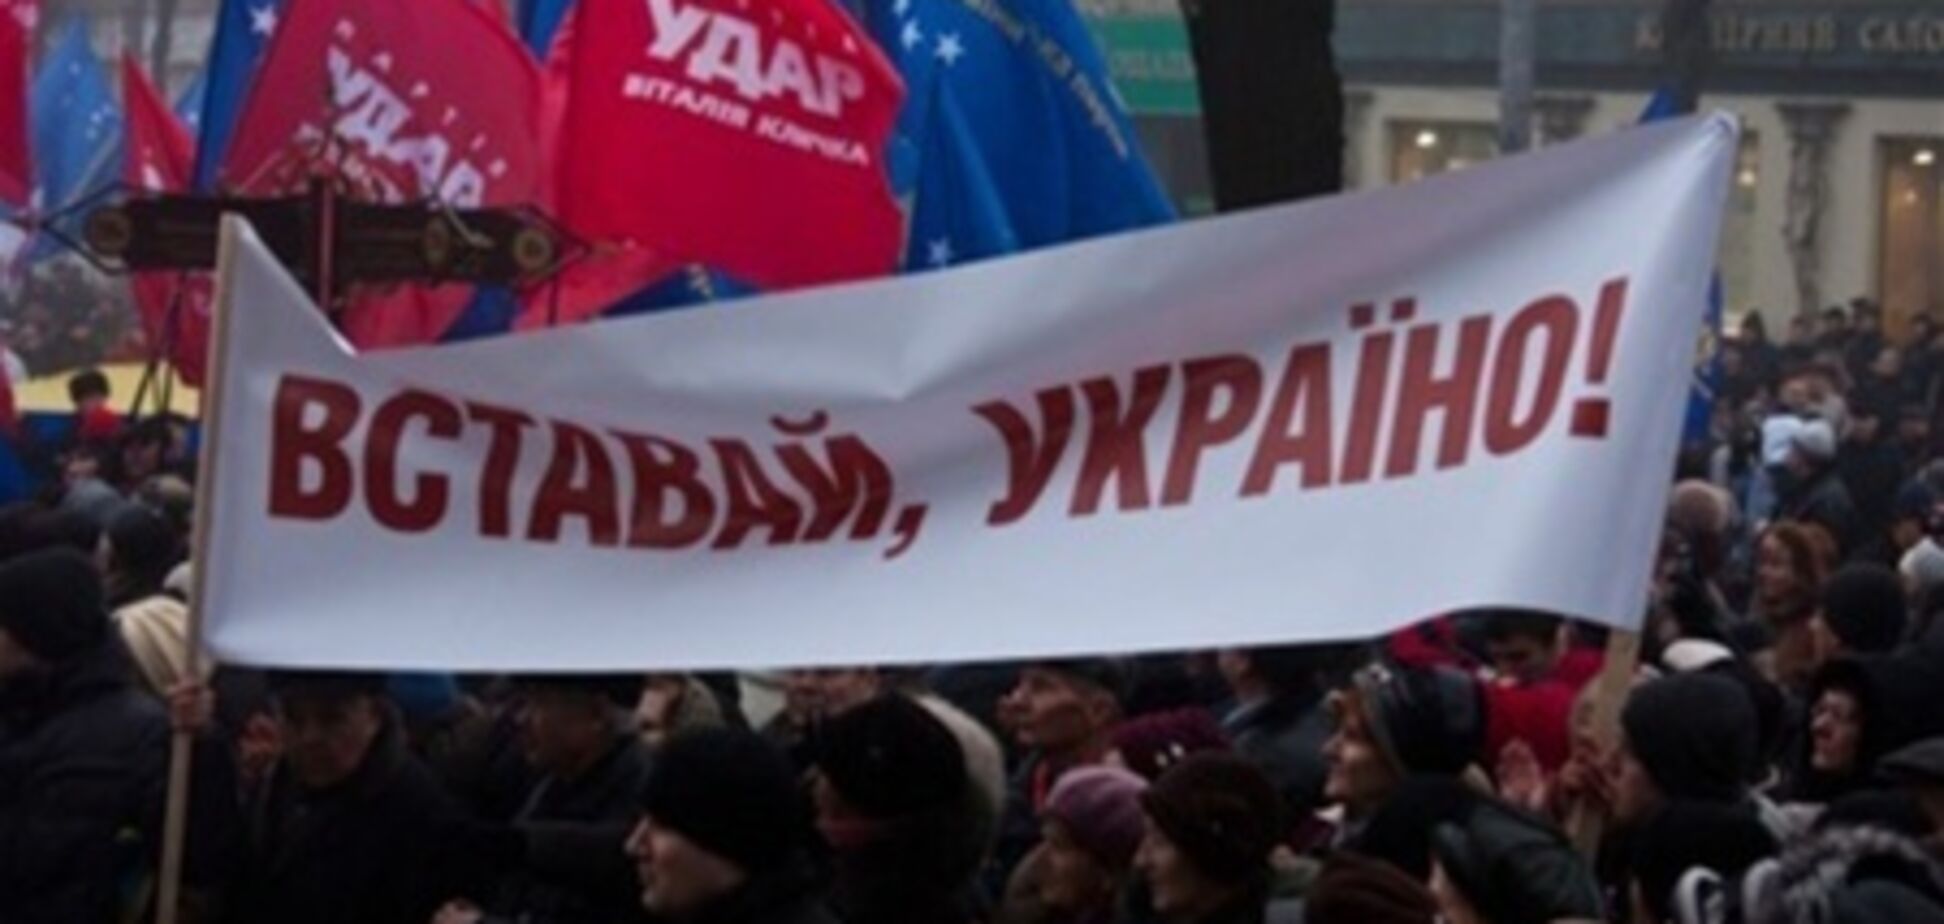 Тимошенко просит прекратить акцию 'Вставай, Украина!'